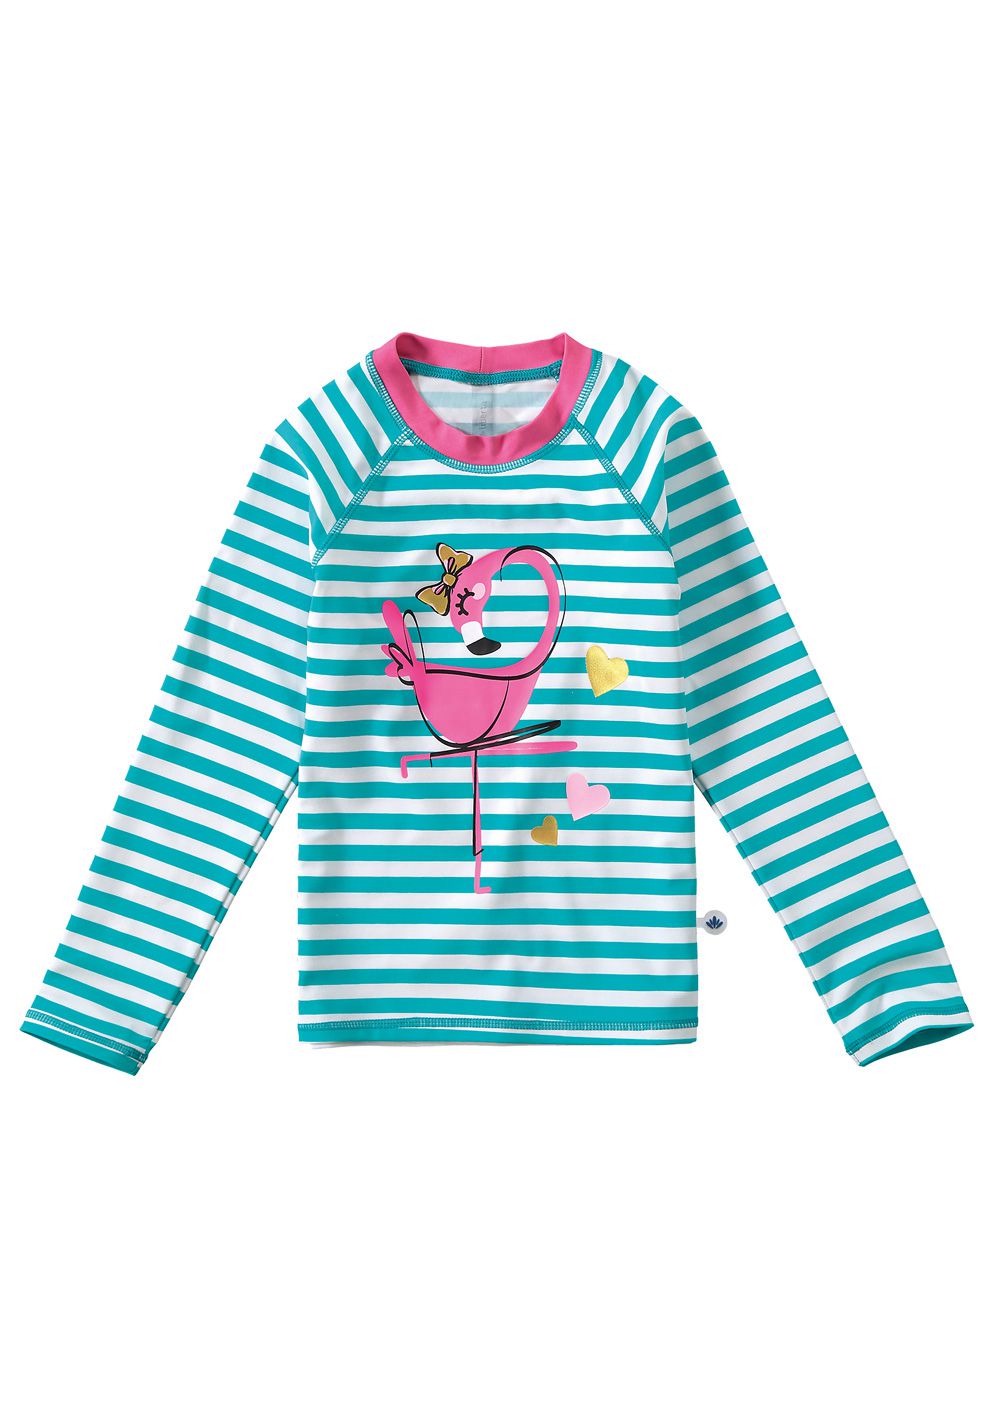 Blusa Térmica Infantil com Proteção UV50+ Verde Flamingo Malwee